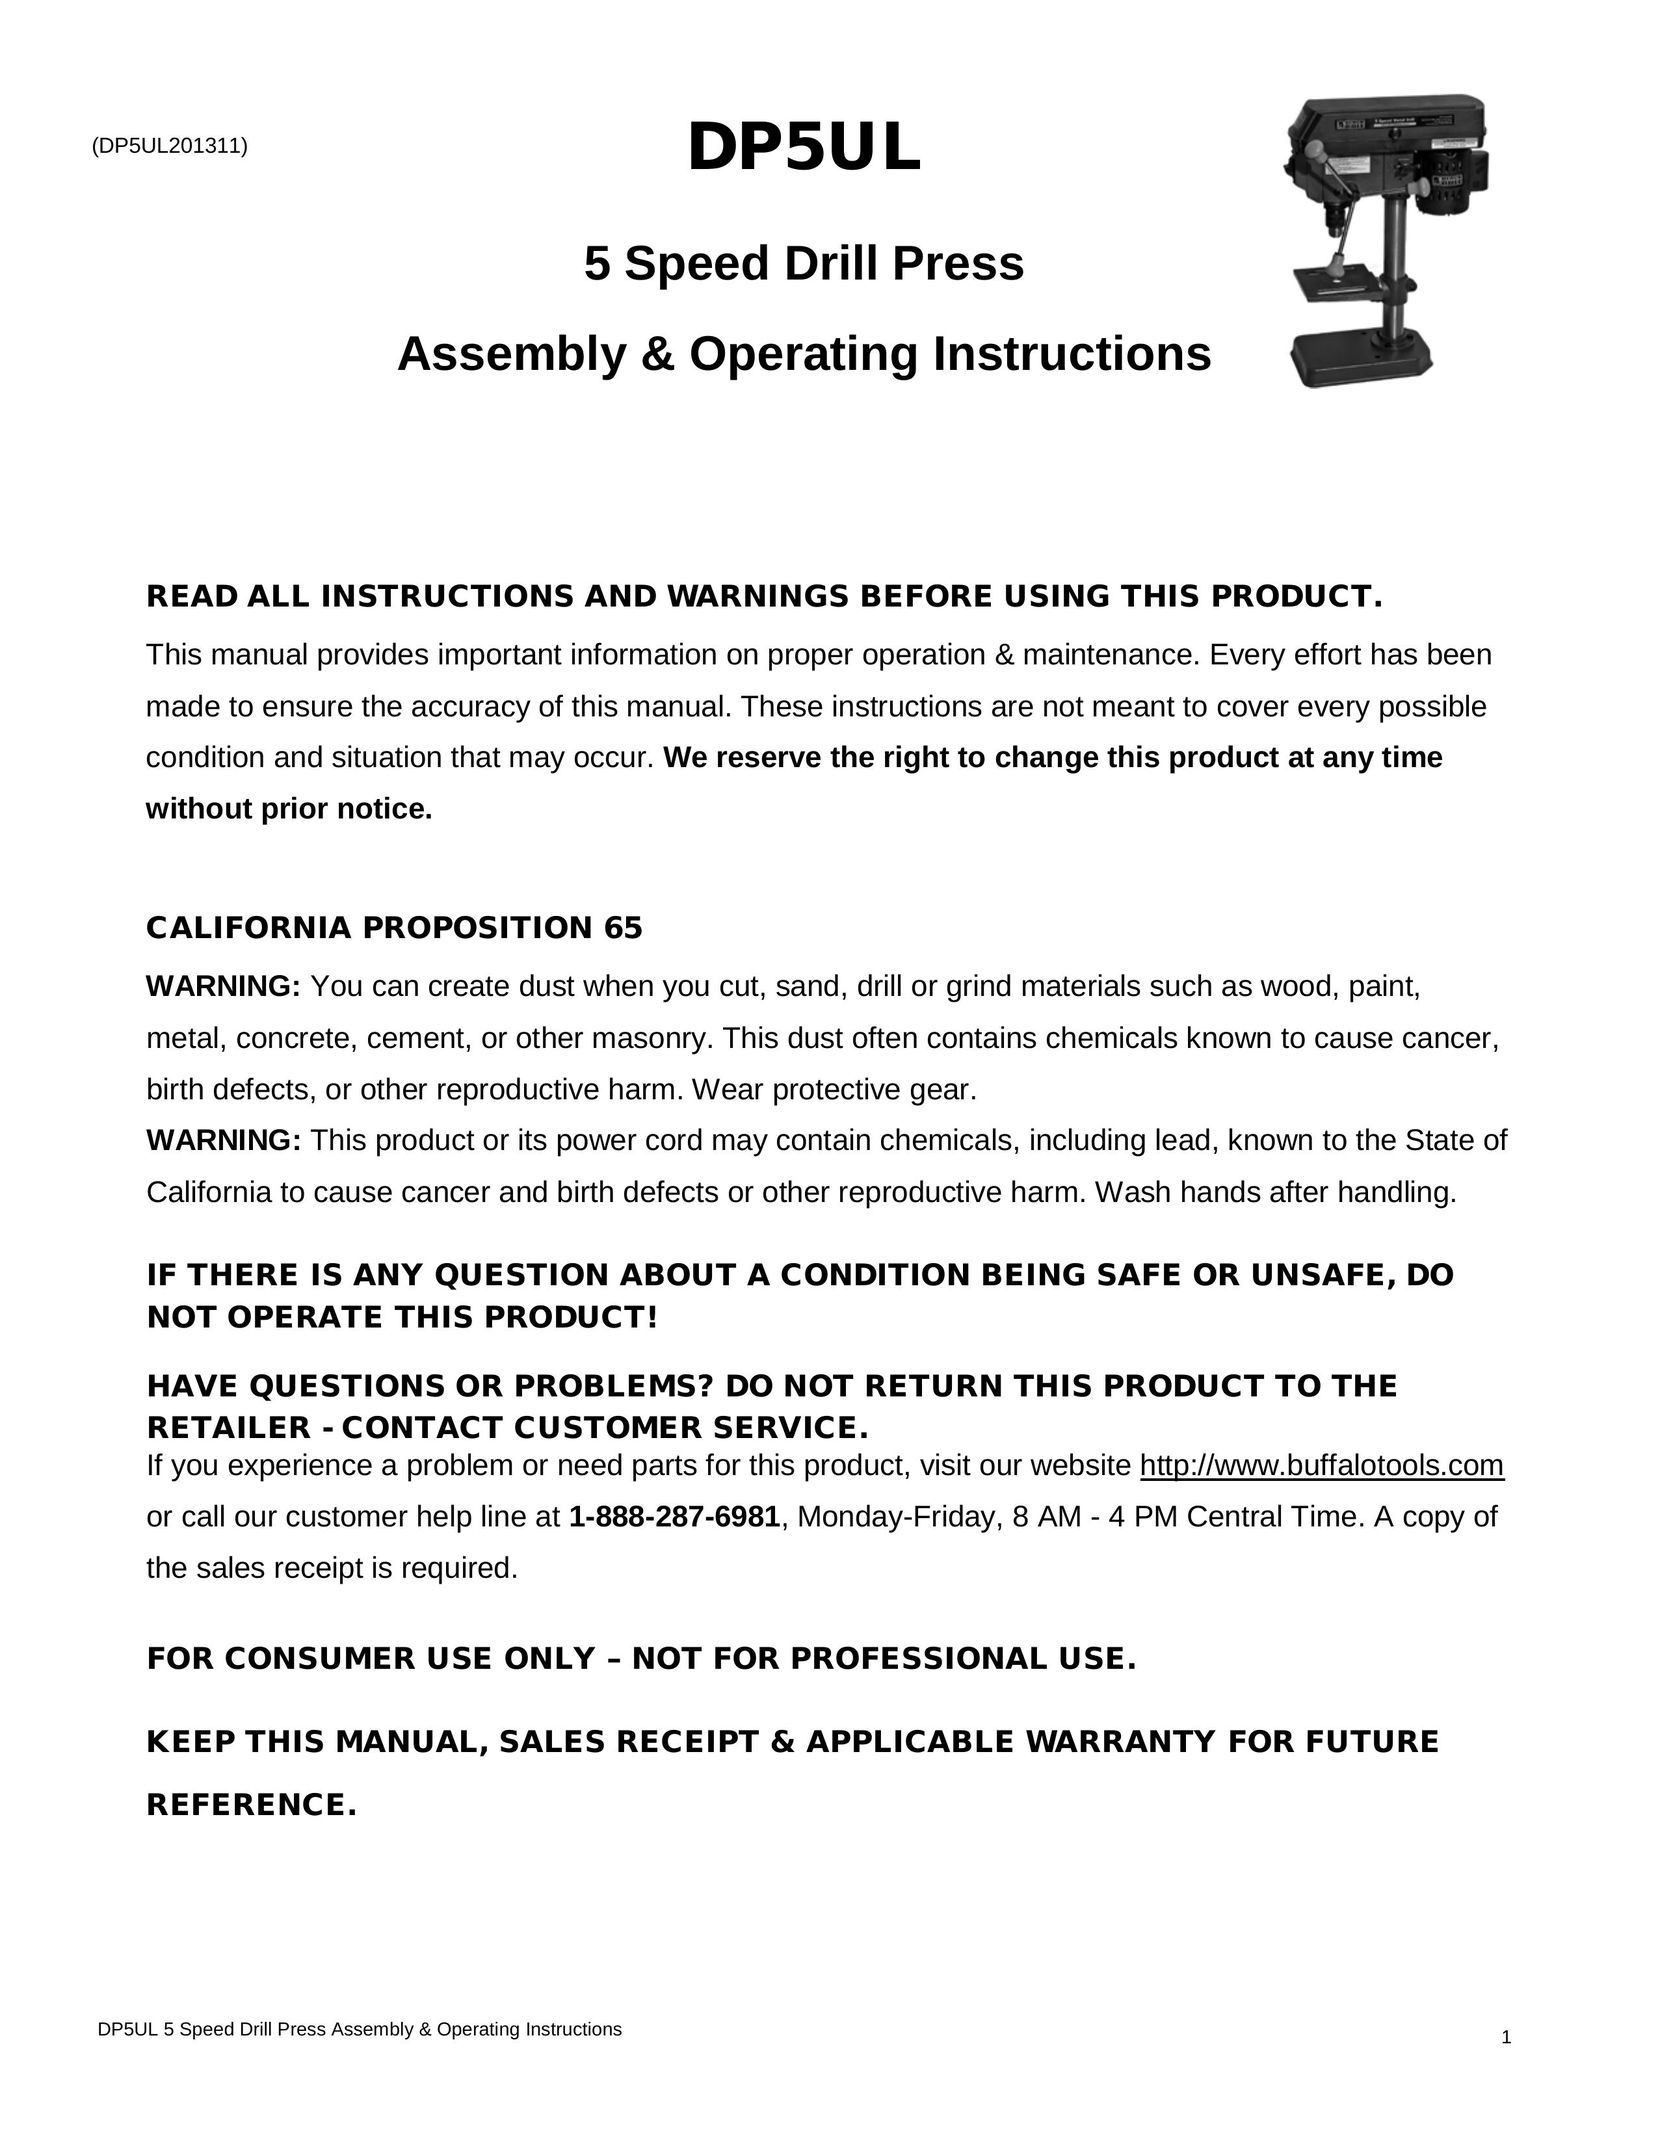 Buffalo Tools DP5UL Drill User Manual